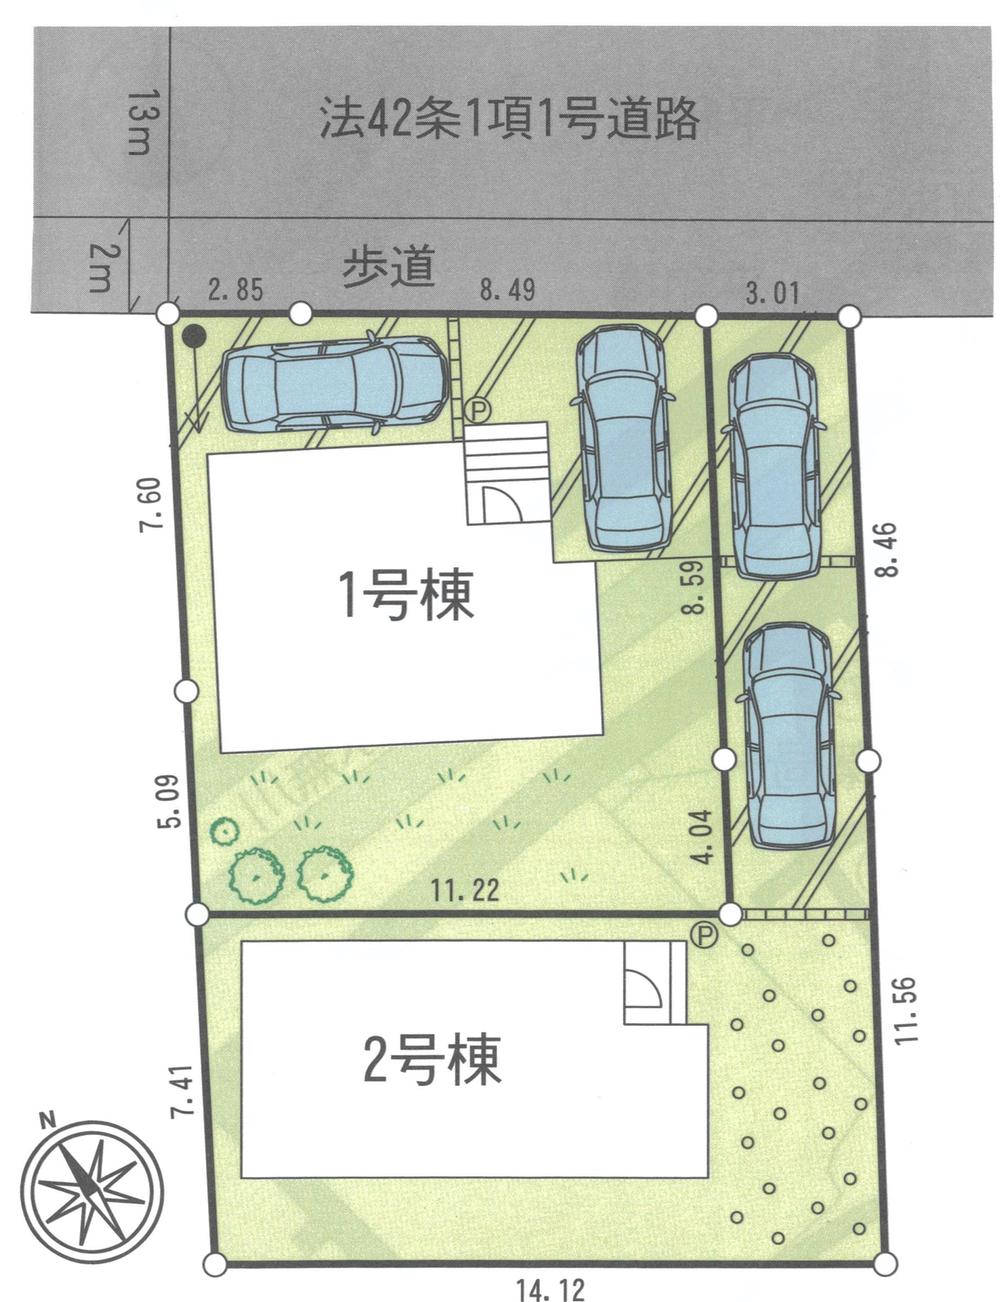 Compartment figure. 24,800,000 yen, 4LDK, Land area 143 sq m , Building area 91.52 sq m